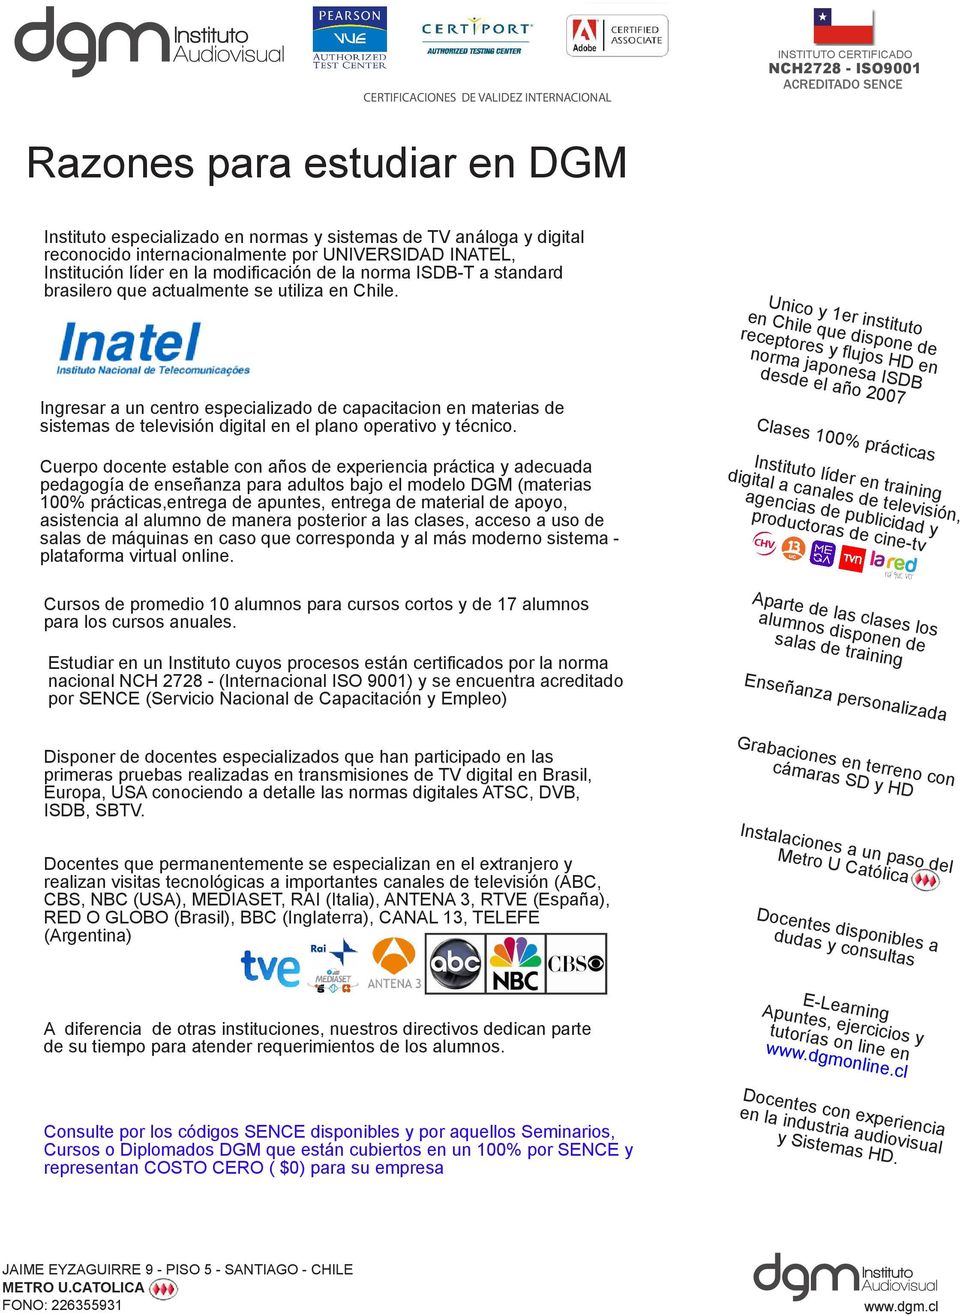 Unico y 1er instituto en Chile que dispone de receptores y flujos HD en norma japonesa ISDB desde el año 2007 Ingresar a un centro especializado de capacitacion en materias de sistemas de televisión